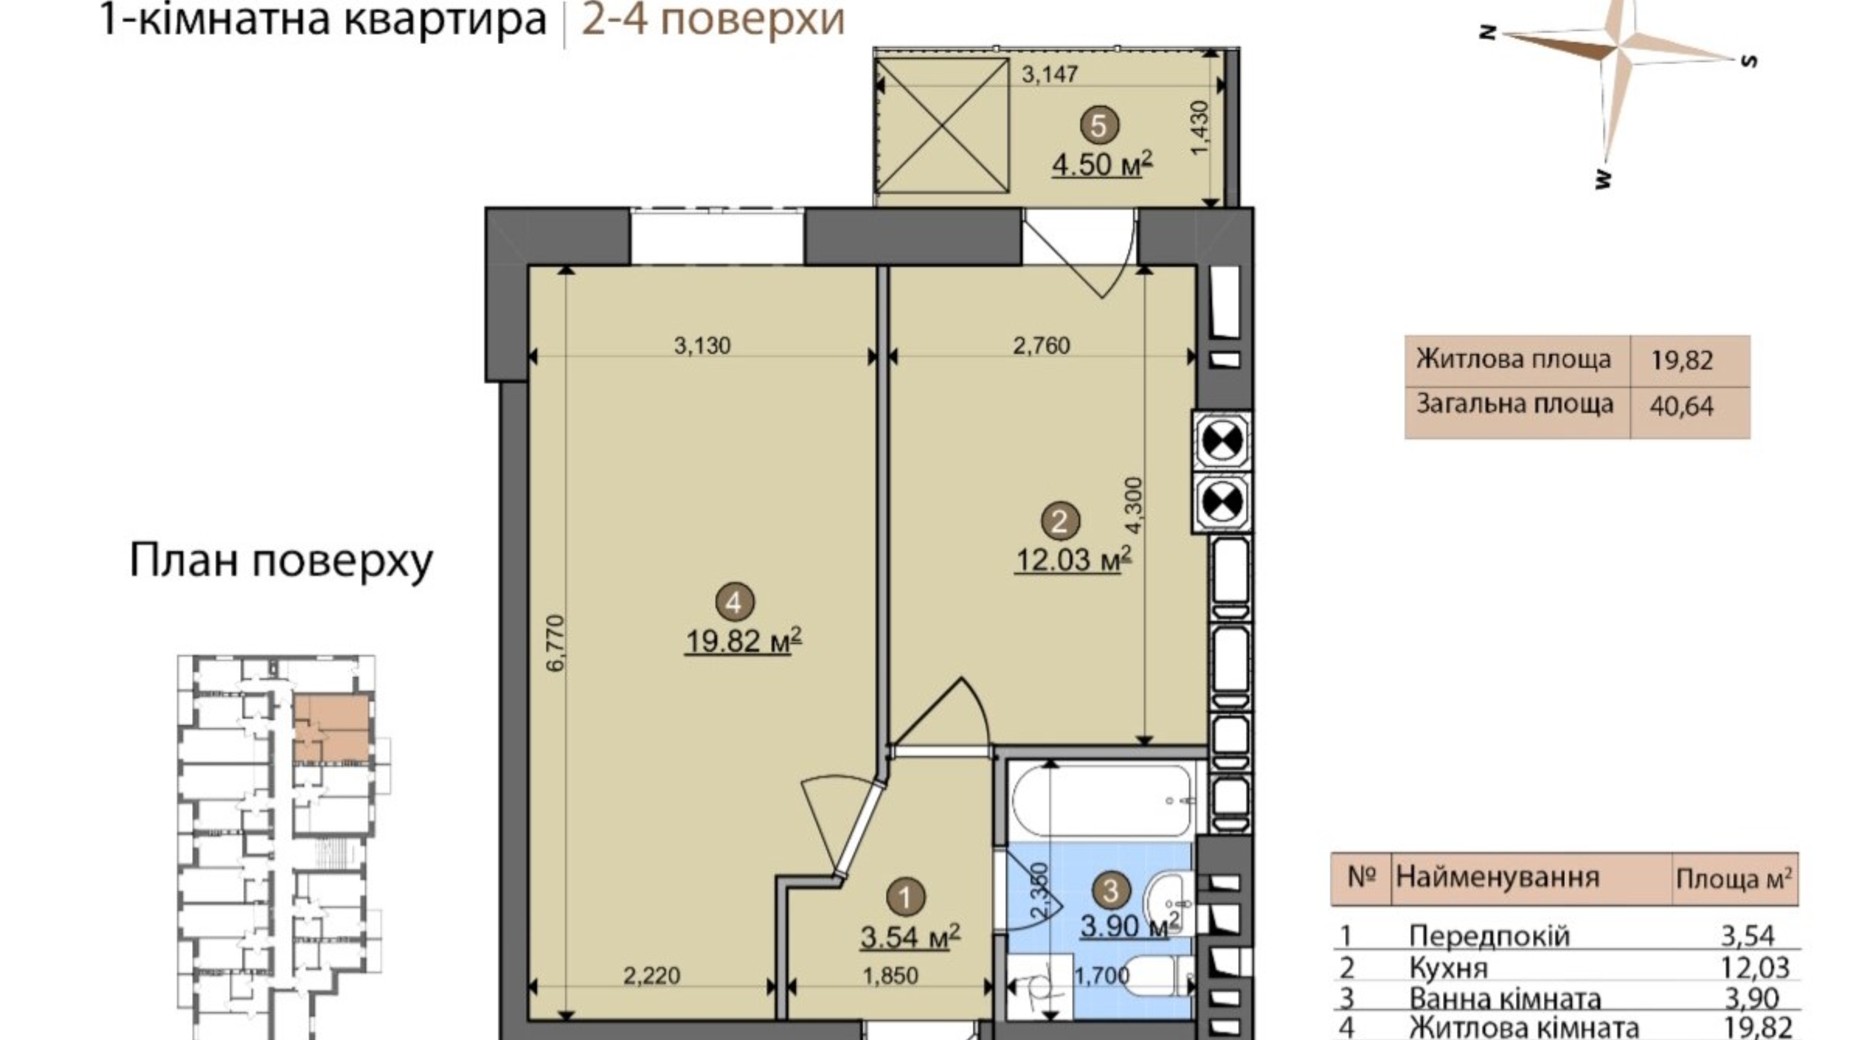 Планировка 1-комнатной квартиры в ЖК Fastiv City 40.64 м², фото 602078